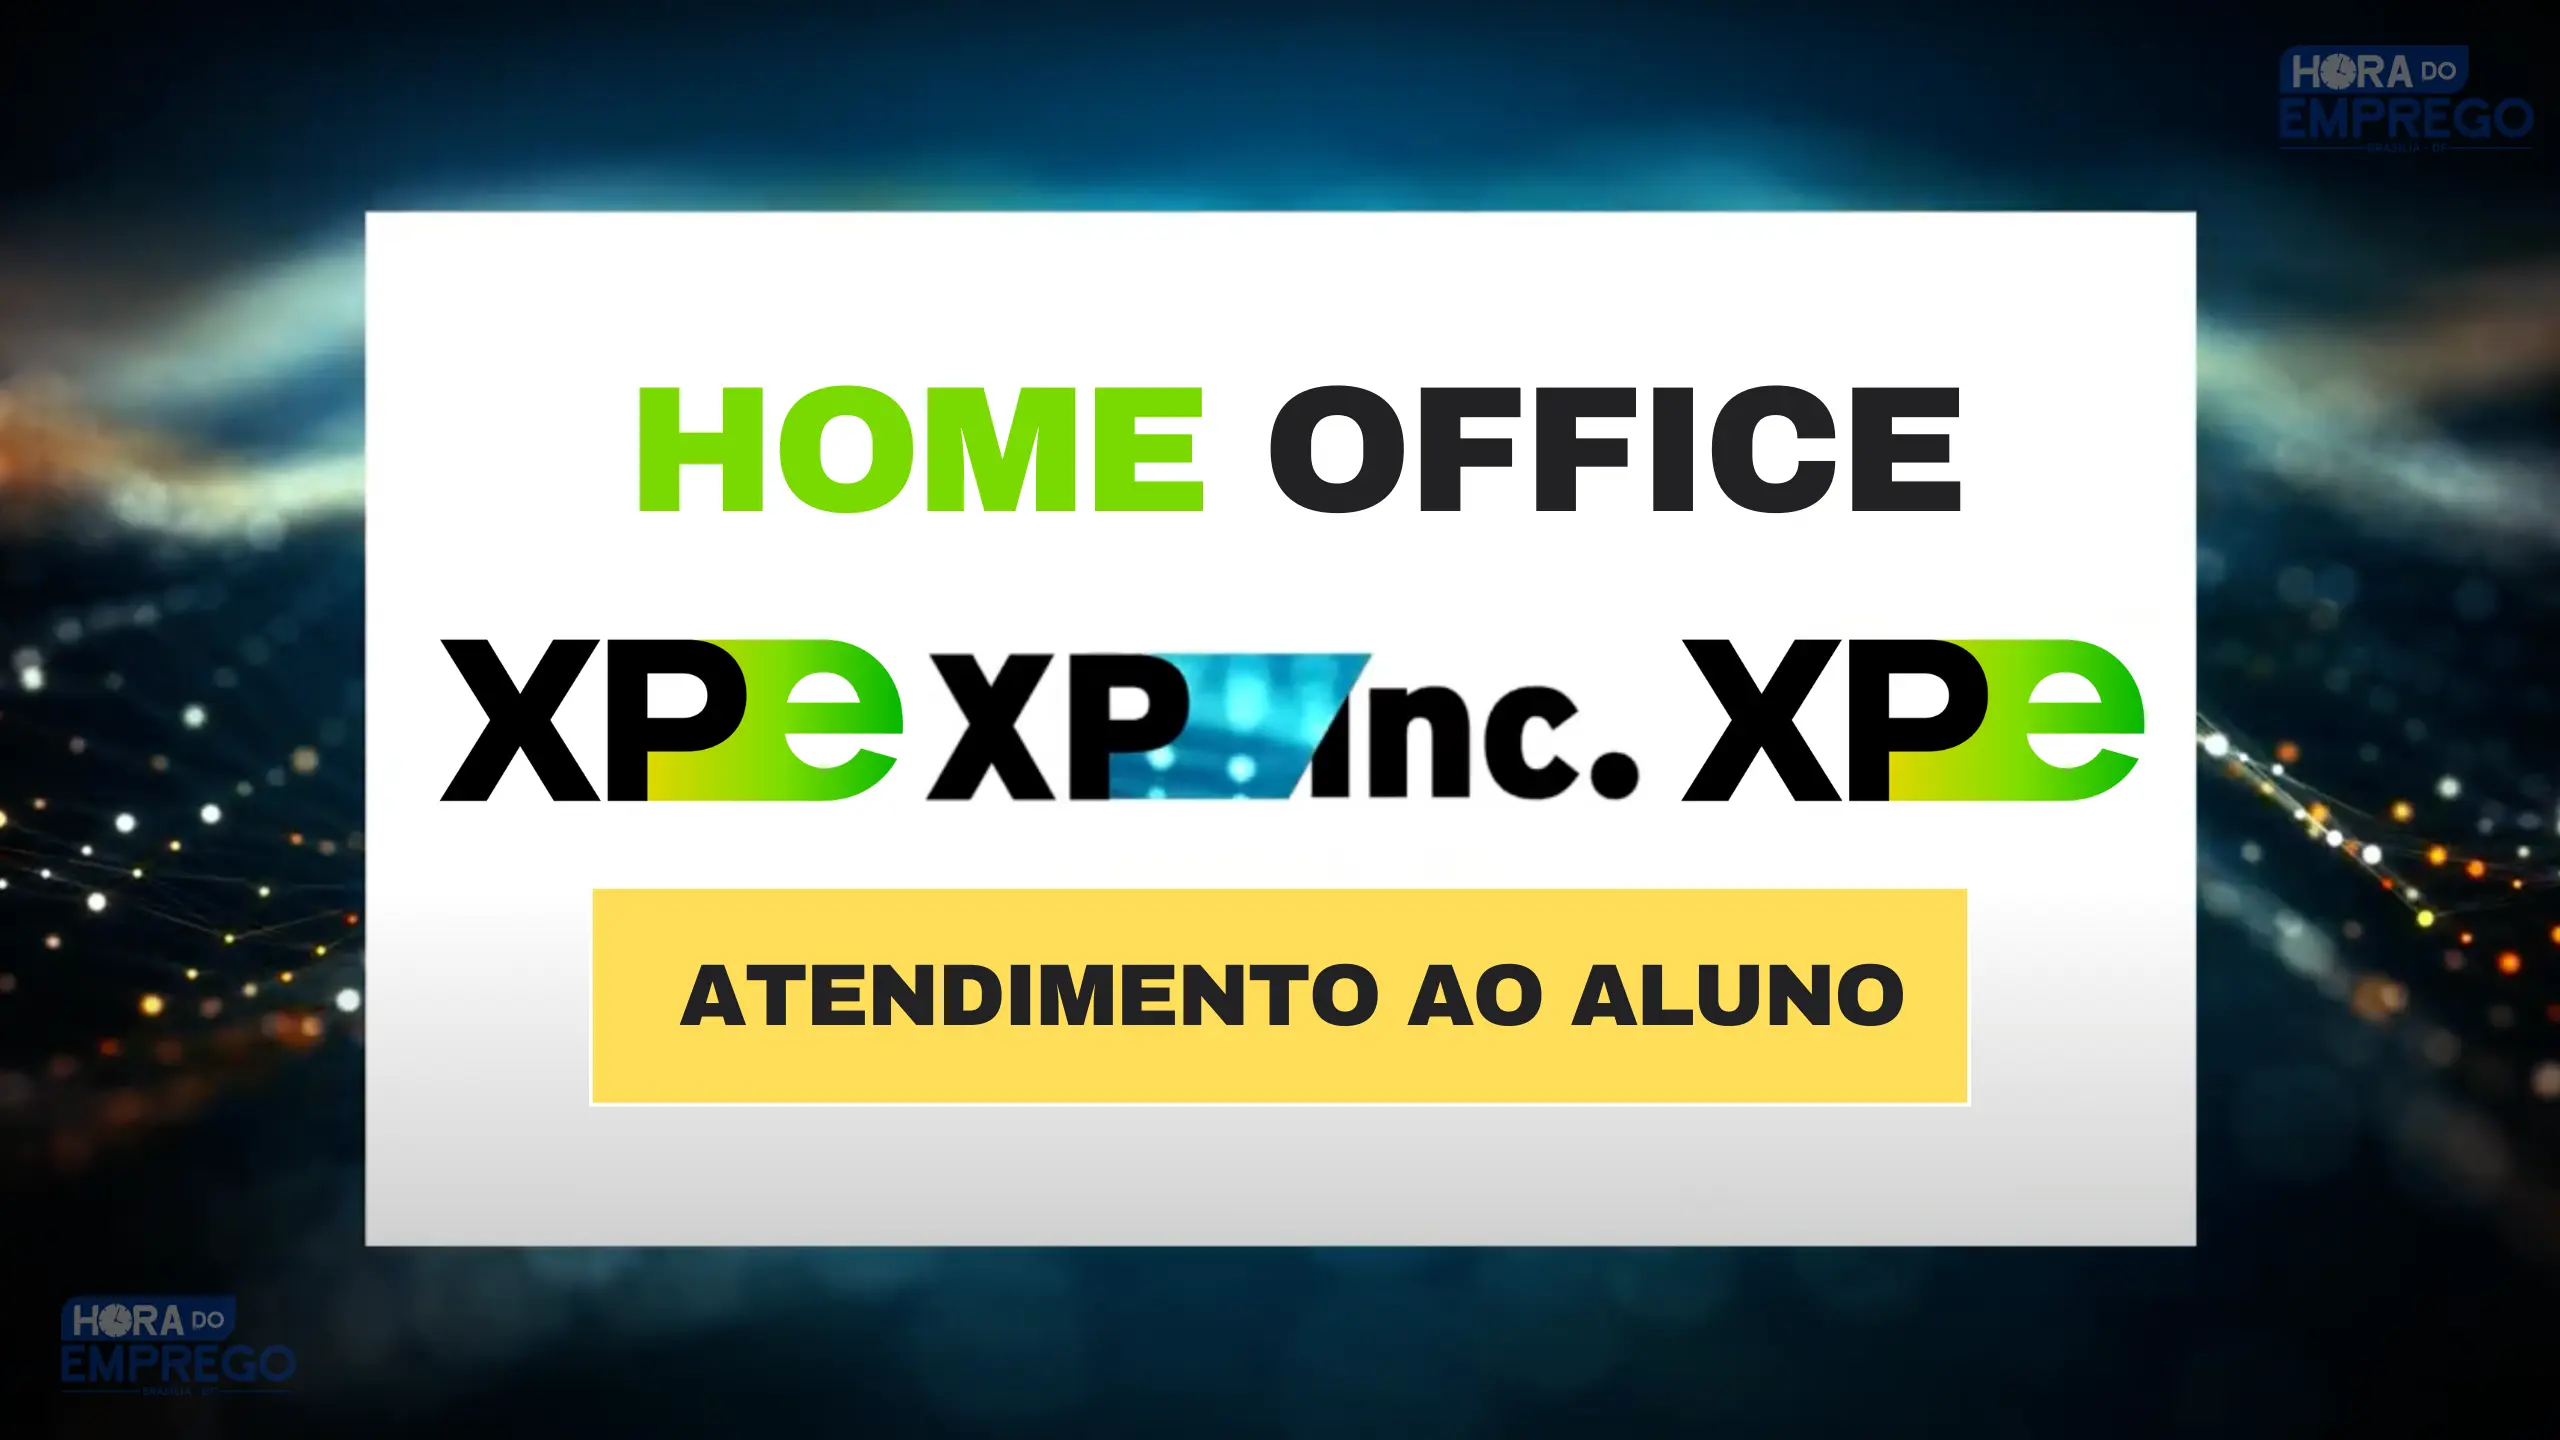 Grupo XP abriu vaga HOME OFFICE para TRABALHAR DE CASA Atendimento ao Aluno no setor da XP Educação